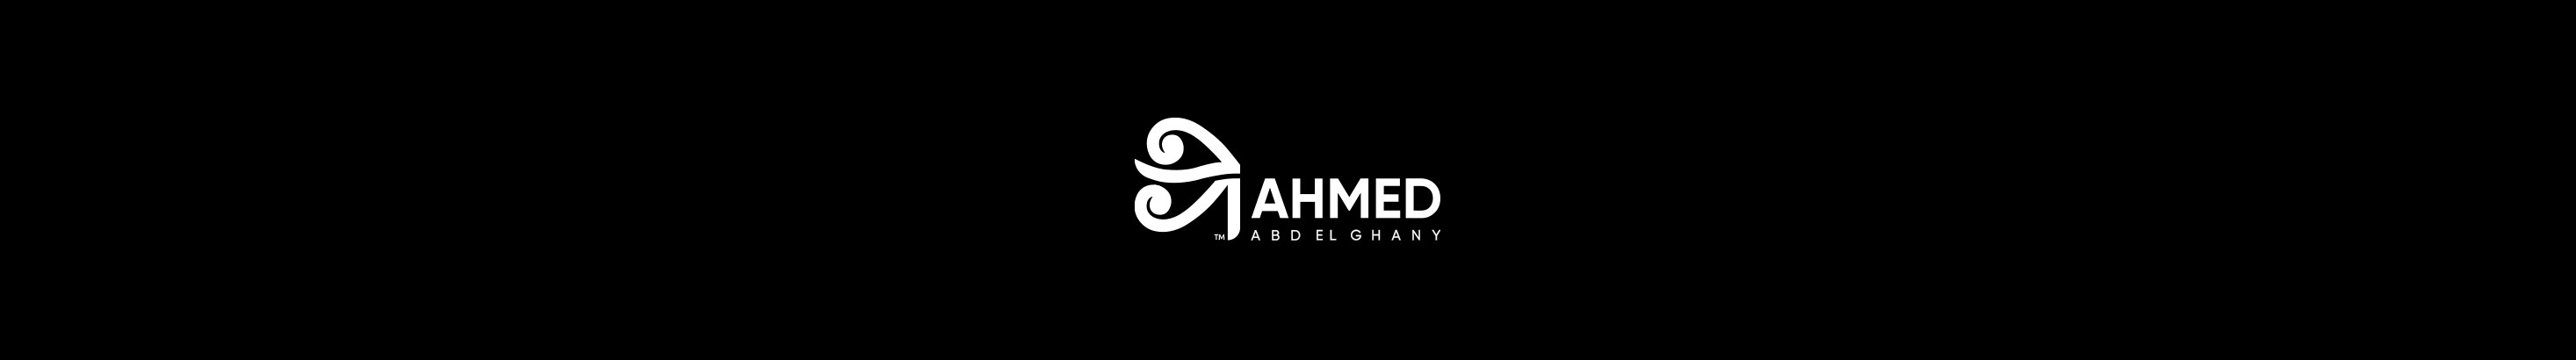 Banner de perfil de Ahmed Abd El Ghany